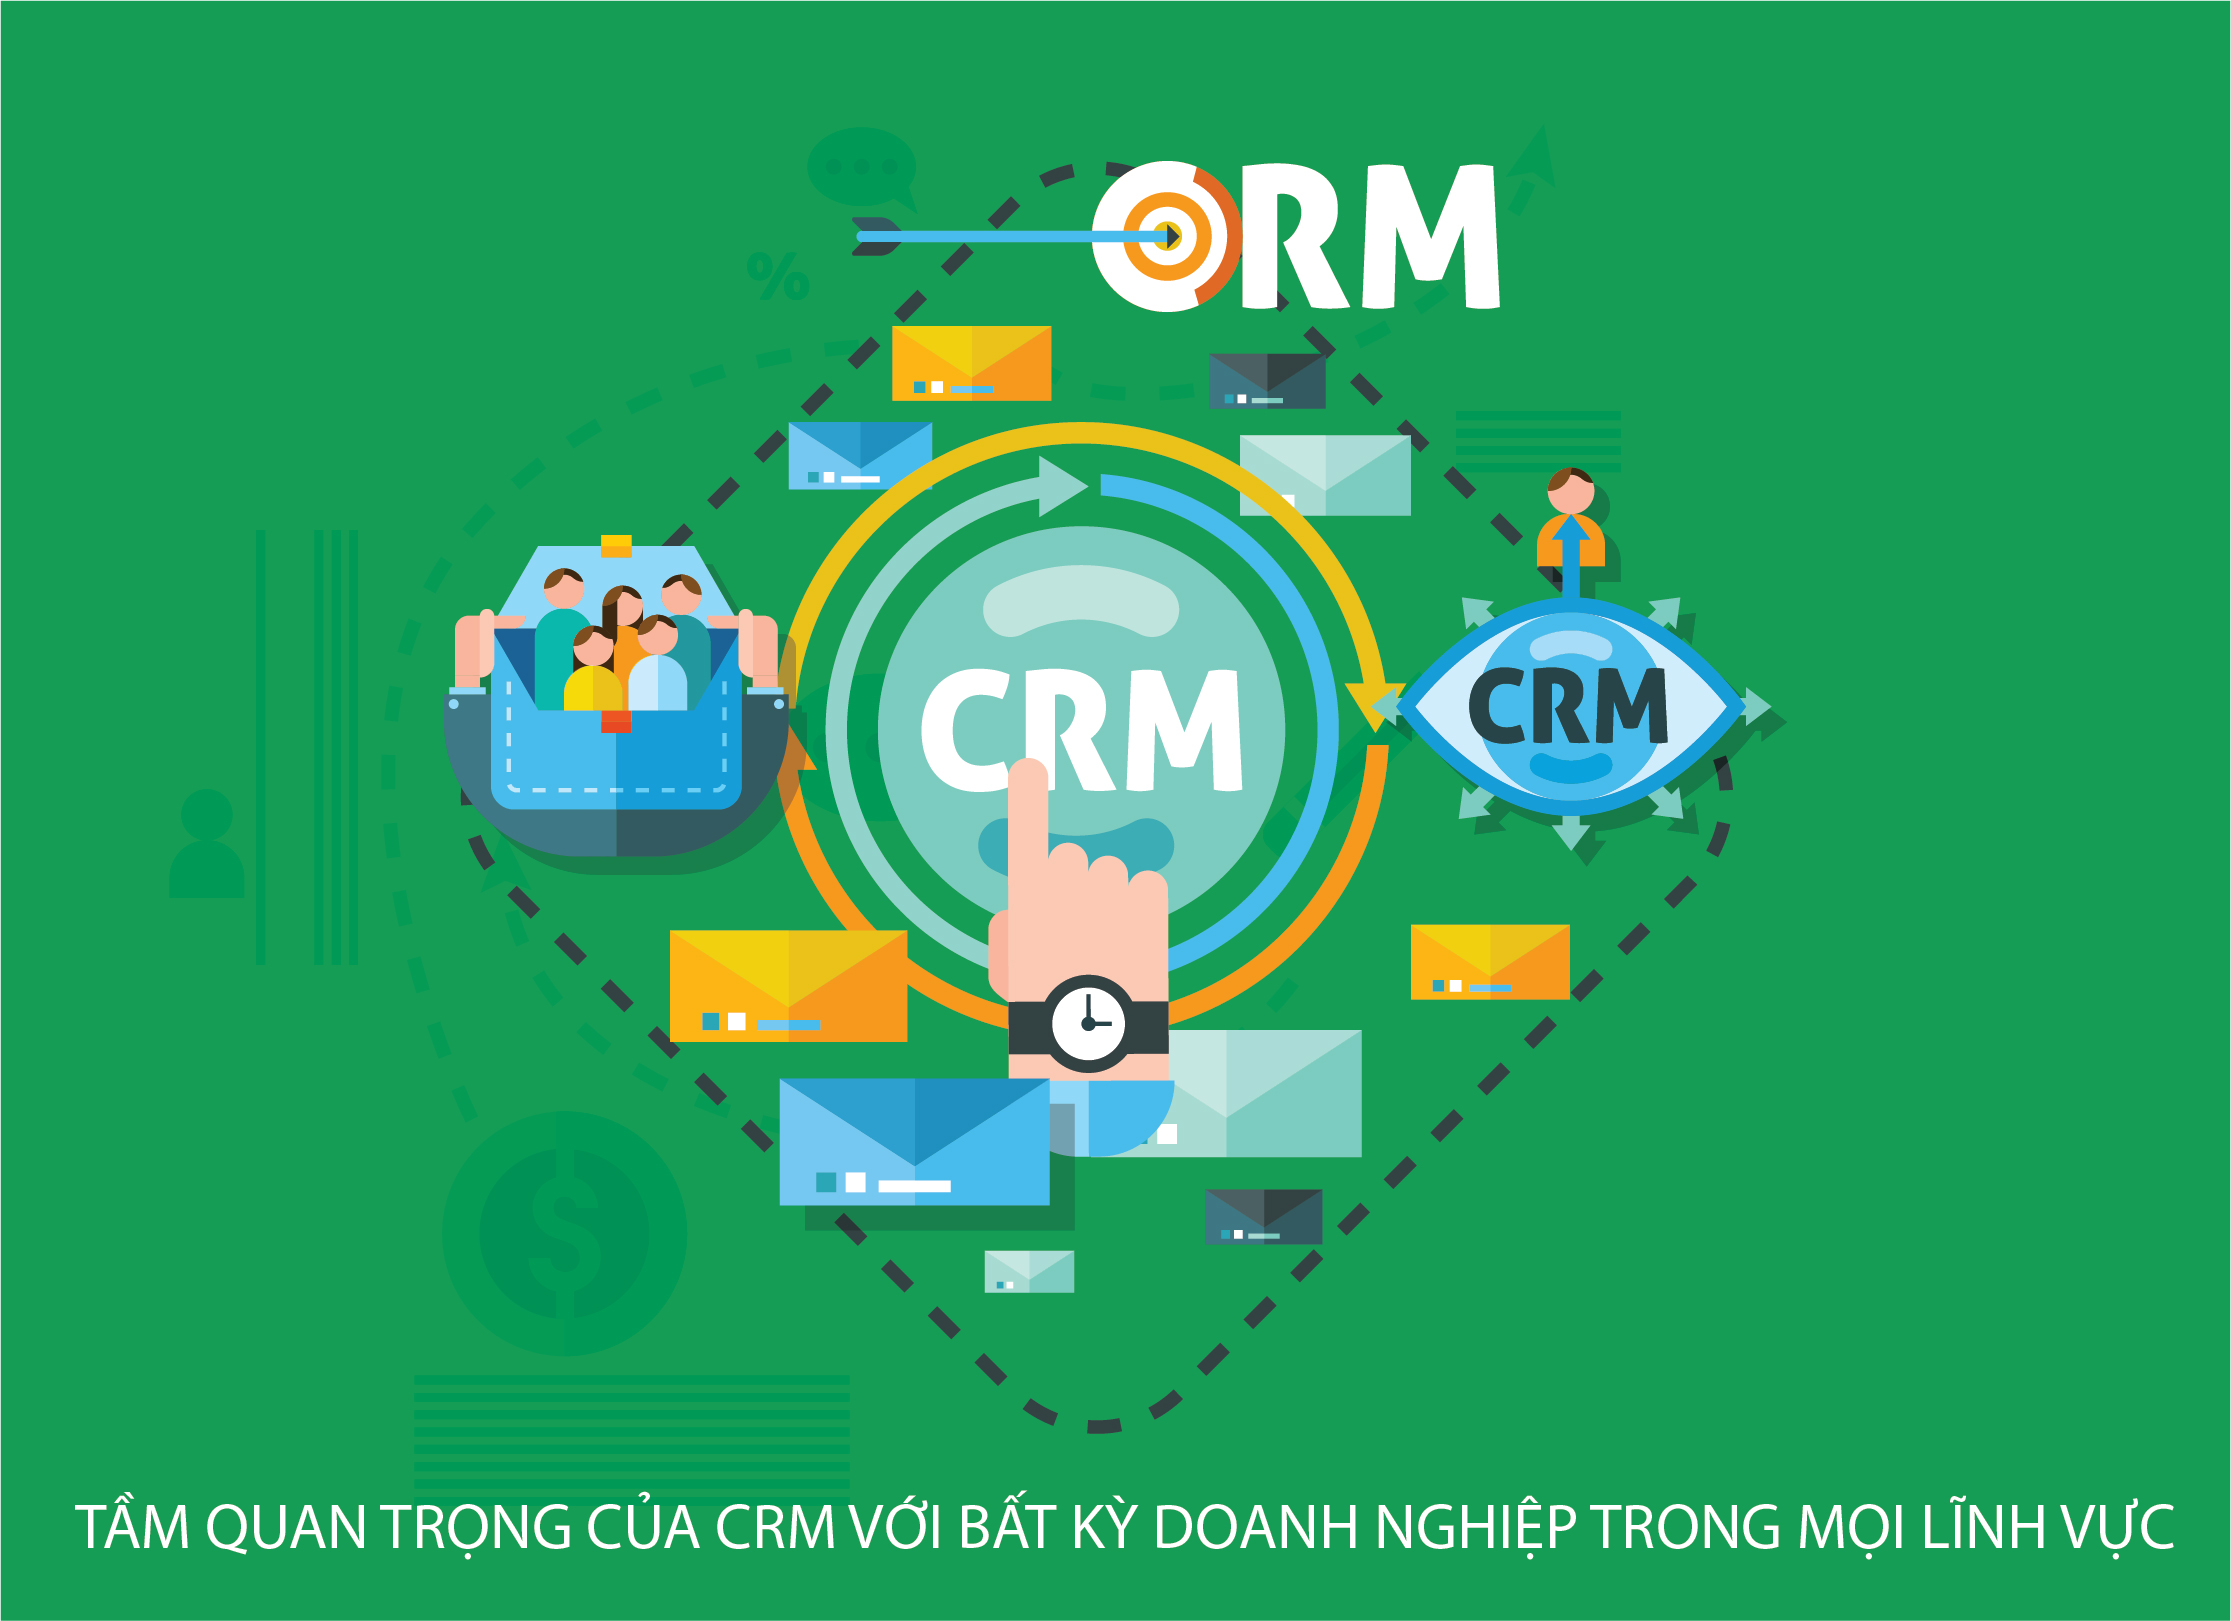 Tầm quan trọng của CRM với bất kỳ doanh nghiệp trọng mọi lĩnh vực